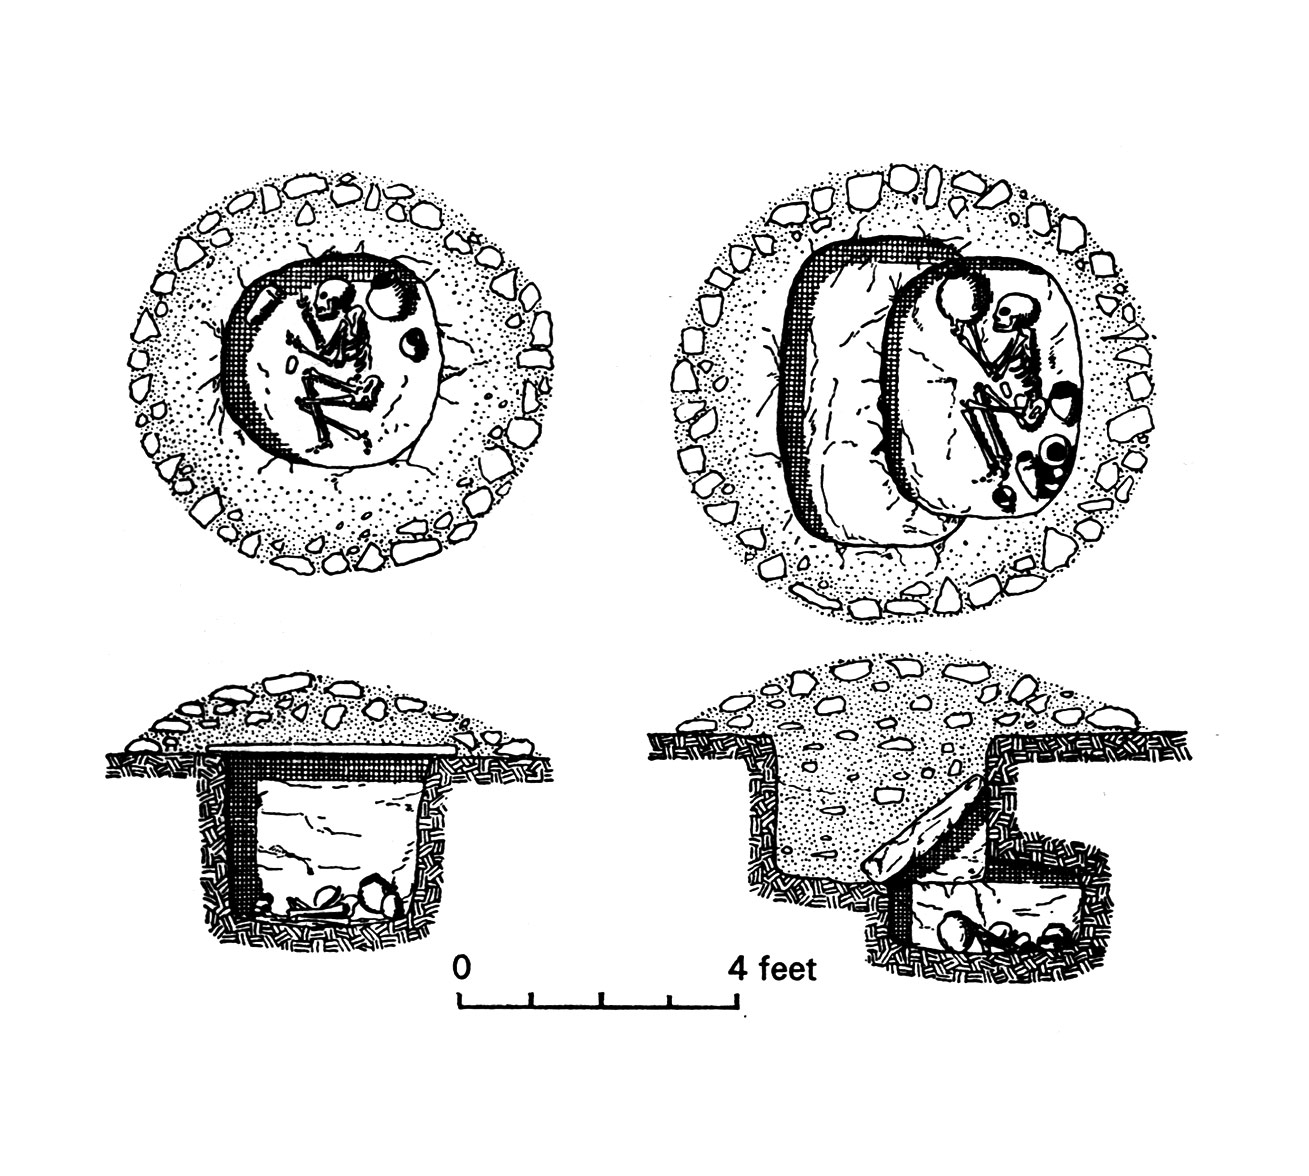 Fig. 1. Tombes de l’horizon A. Adams 1977, fig. 15.